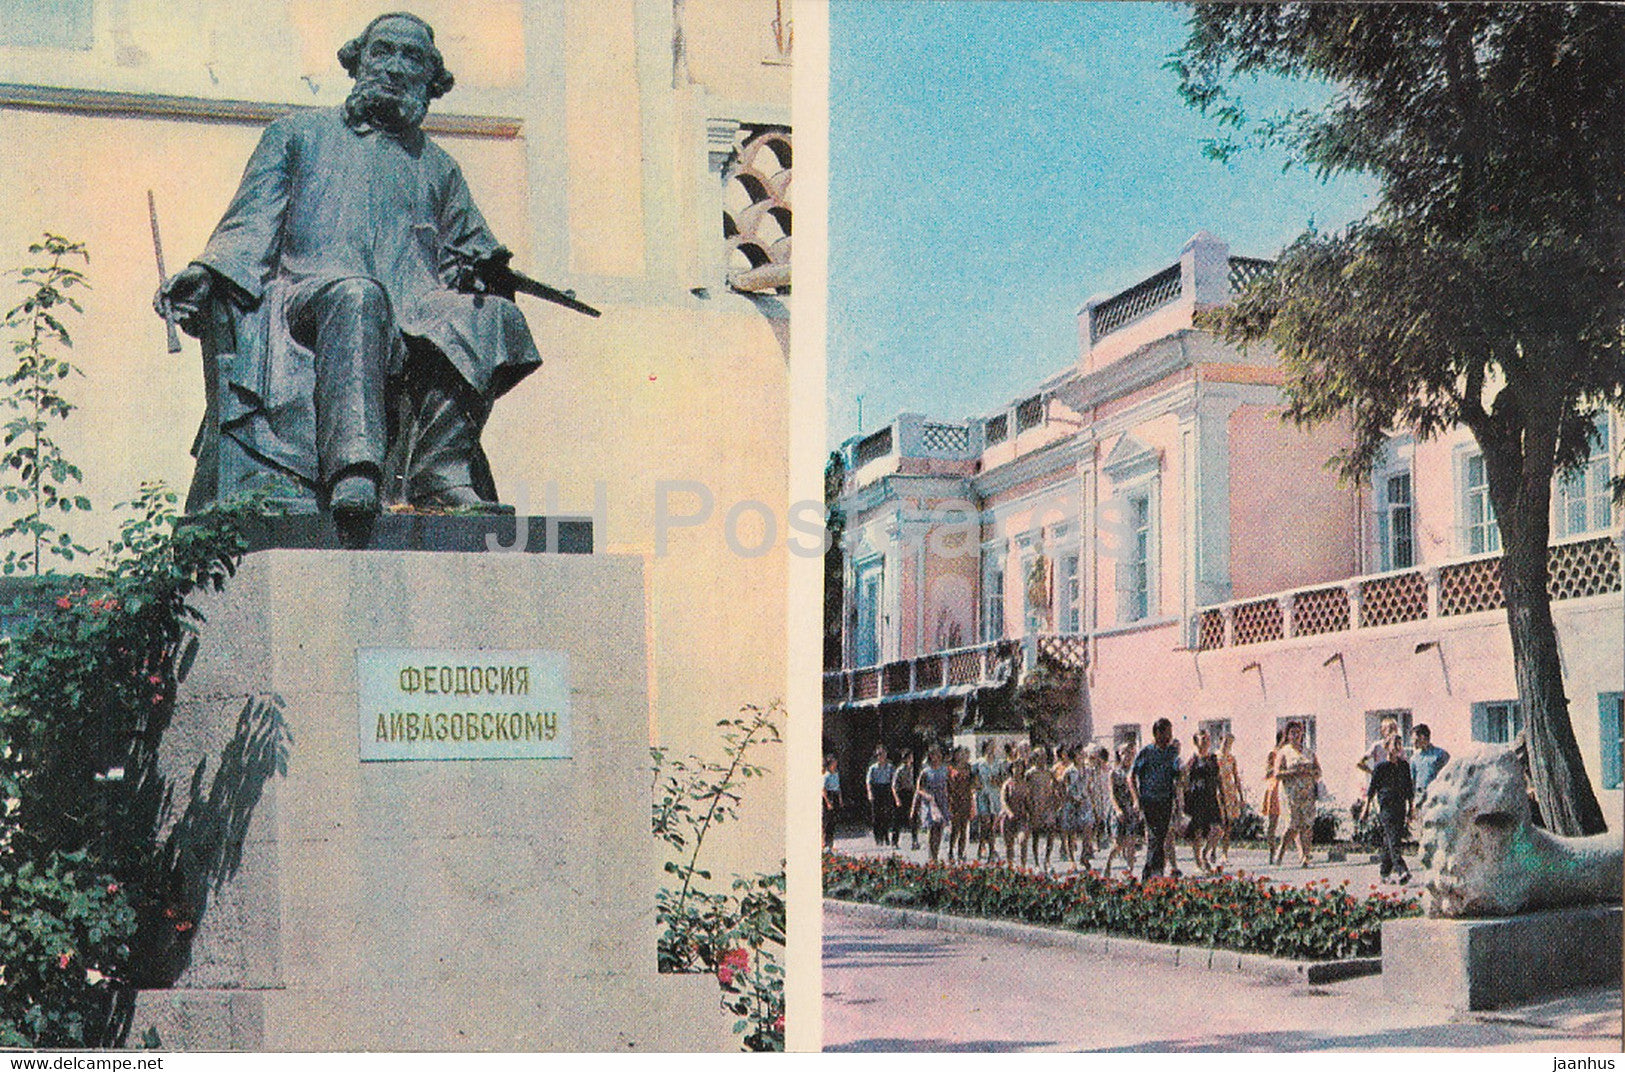 Feodosia - monument to Russian artist Ivan Aivazovsky - Art Gallery - Crimea - 1974 - Ukraine USSR - unused - JH Postcards